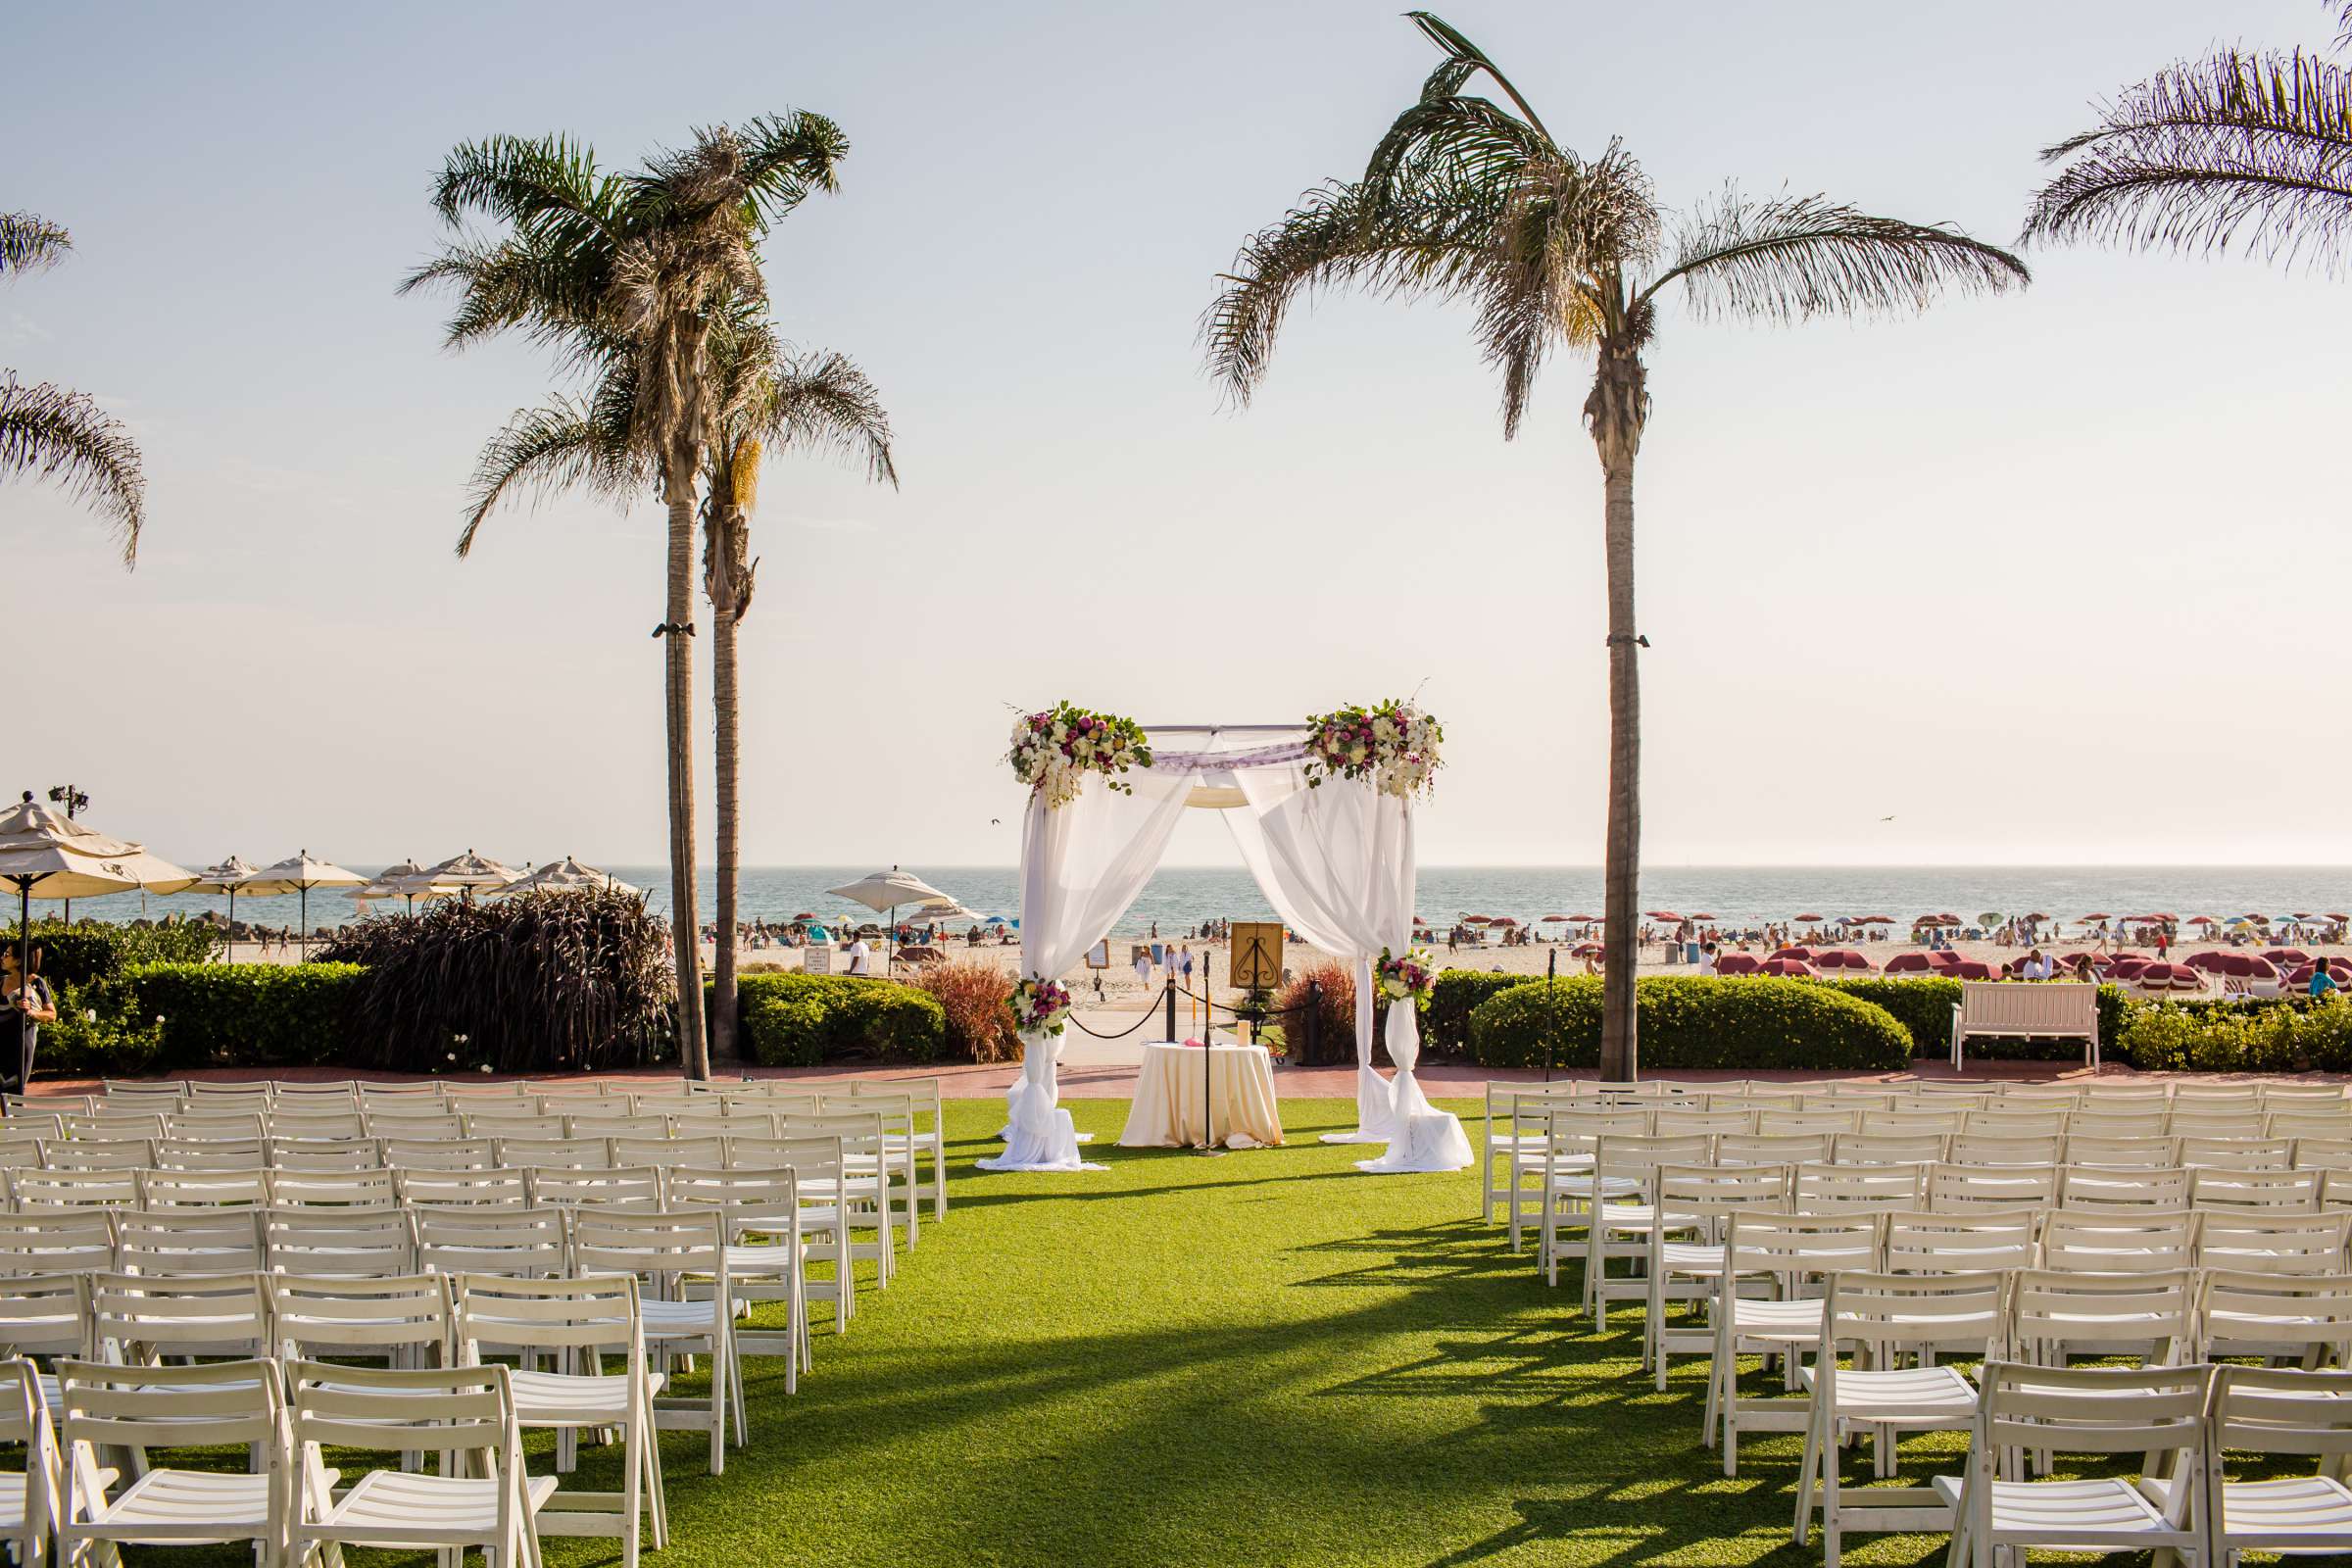 Hotel Del Coronado Wedding, Sabrina and Gehaan Wedding Photo #409120 by True Photography